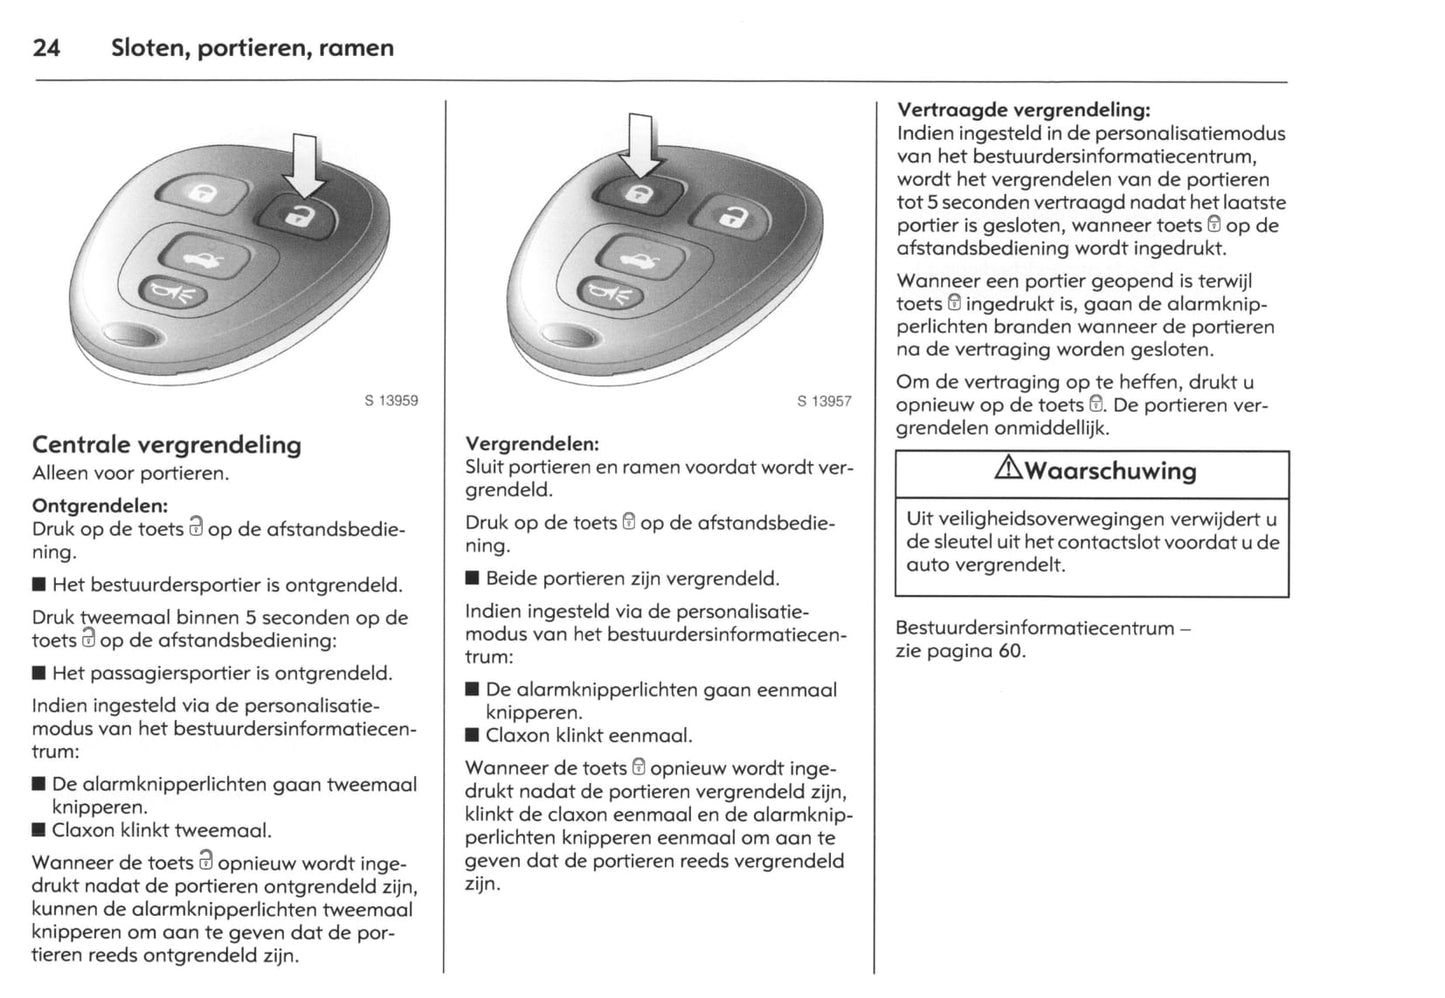 2007-2009 Opel GT Bedienungsanleitung | Niederländisch